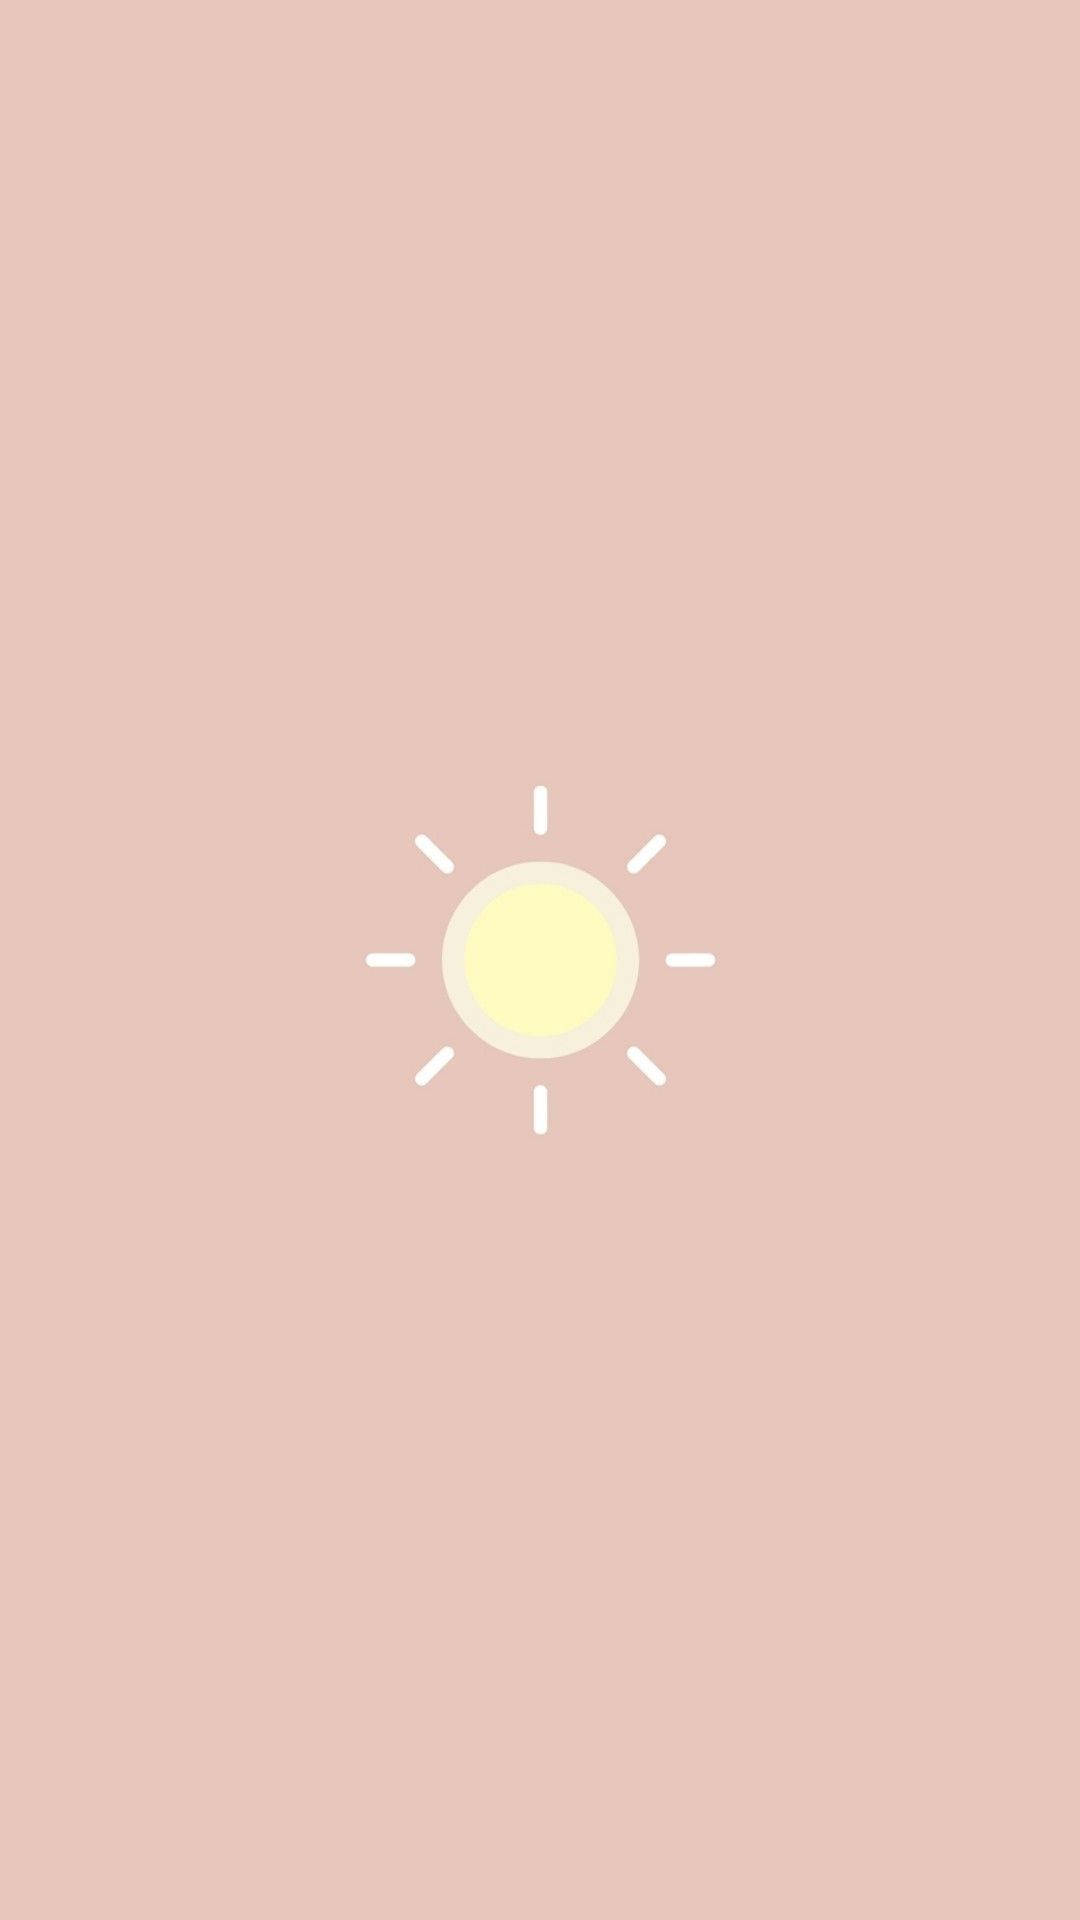 Aesthetic Sun Cute IPhone Wallpaper